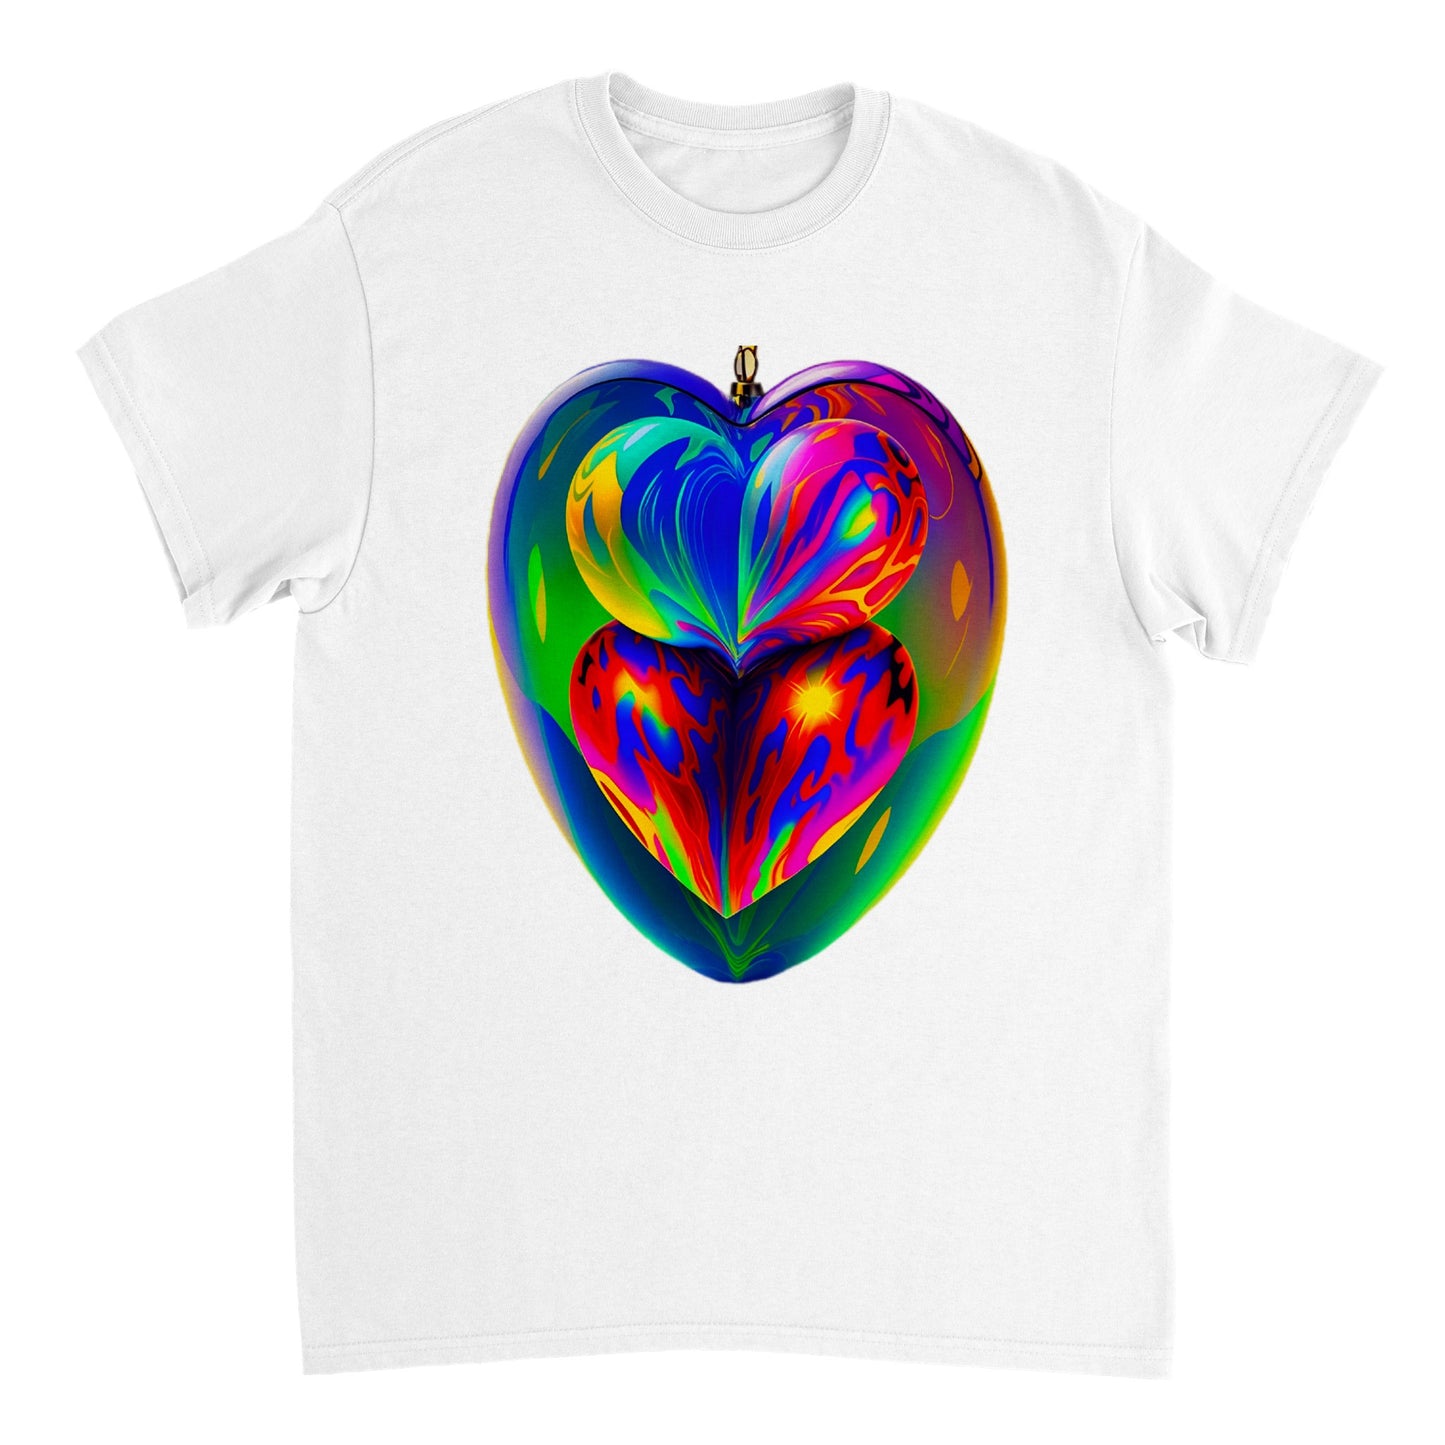 Love Heart - Heavyweight Unisex Crewneck T-shirt 89